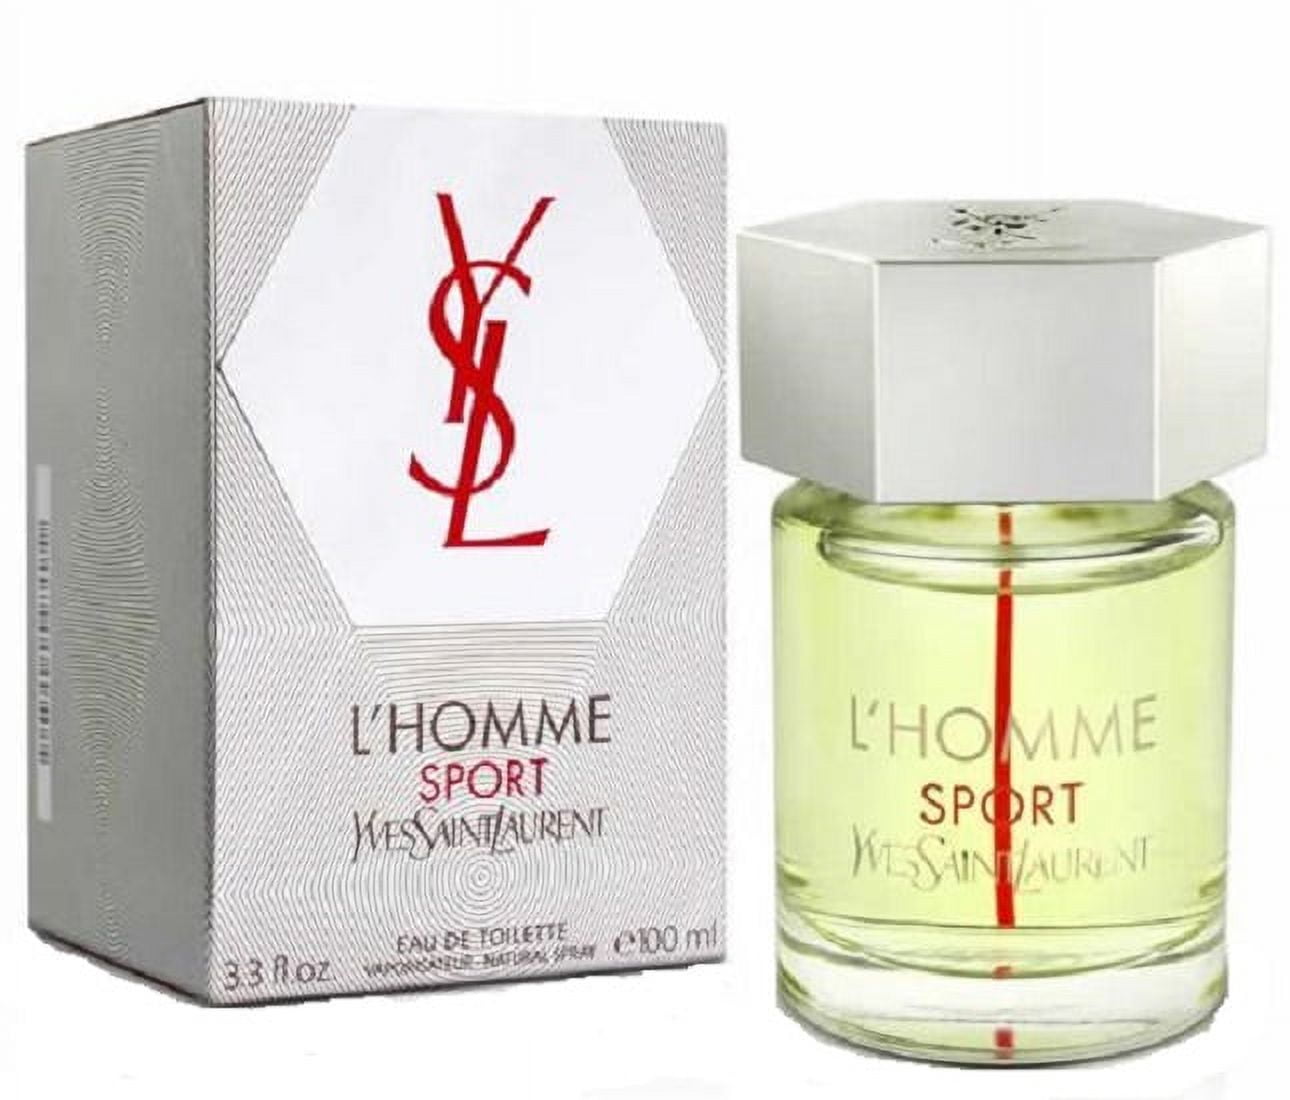 Yves Saint Laurent L' Homme Sport For Men Cologne 3.3 oz ~ 100 ml EDT Spray